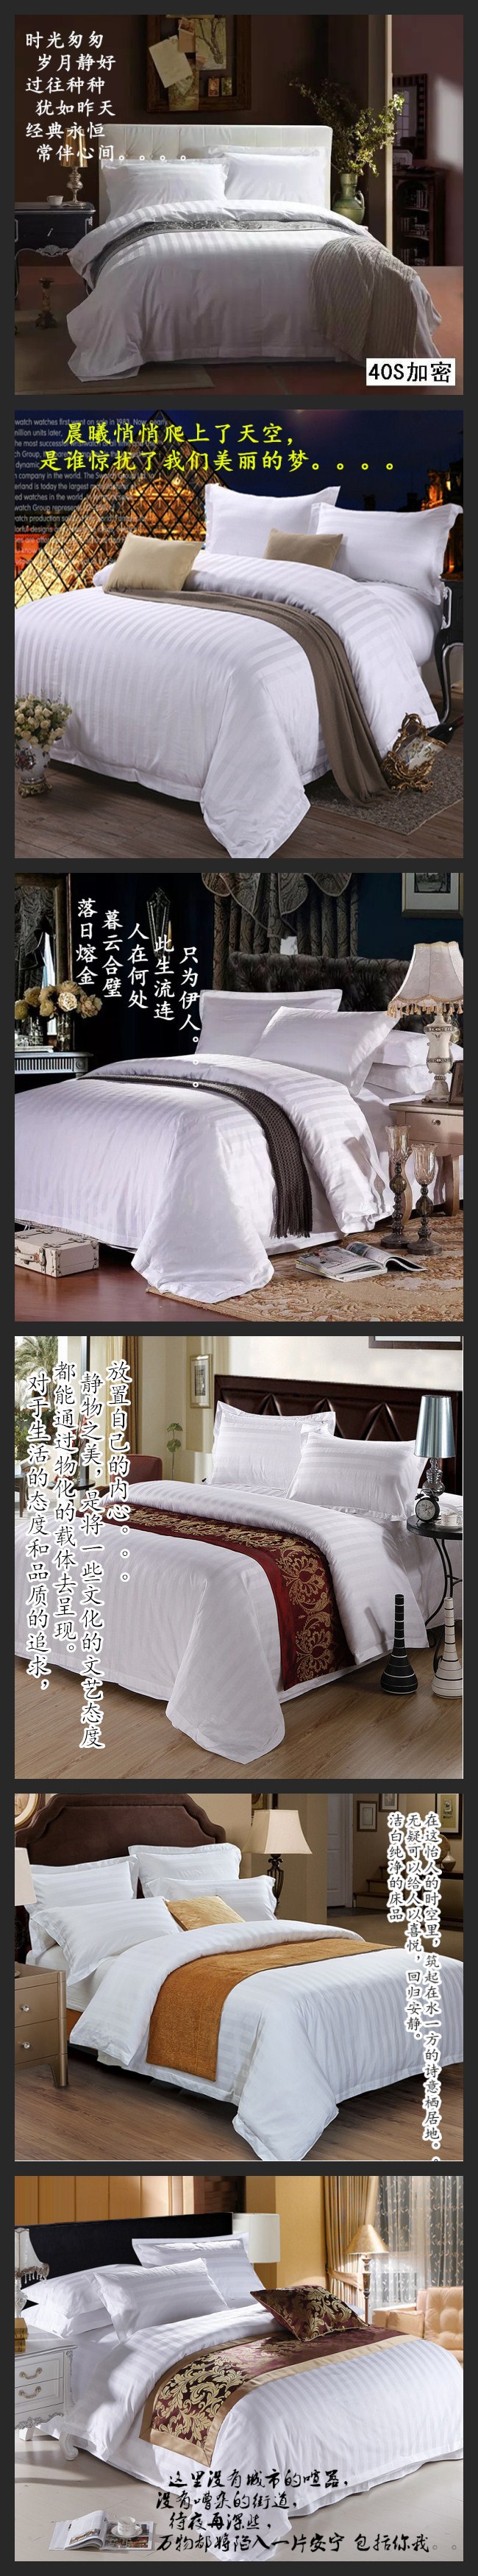 宾馆床上用品 酒店床品 客房布草 纯棉加厚四件套 枕套 订做批发